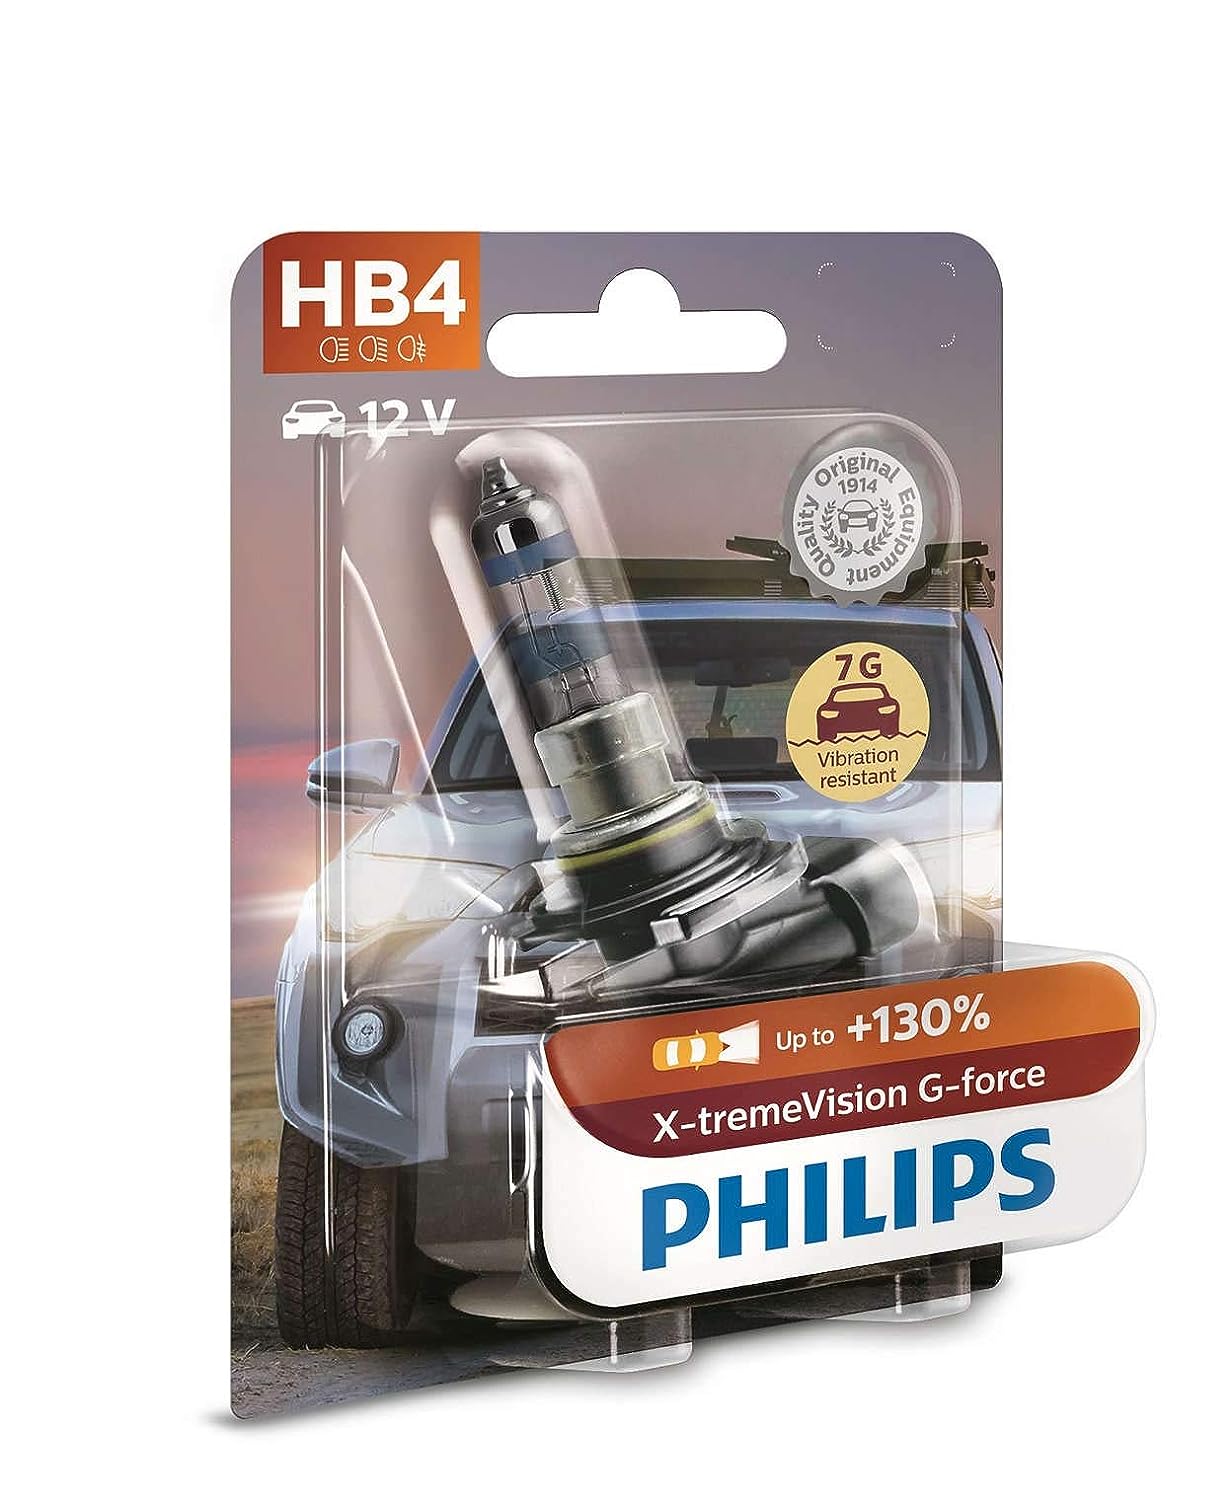 Philips 9005/9006 12V Halogen Light For Car, Headlight bulb , Pack of 1